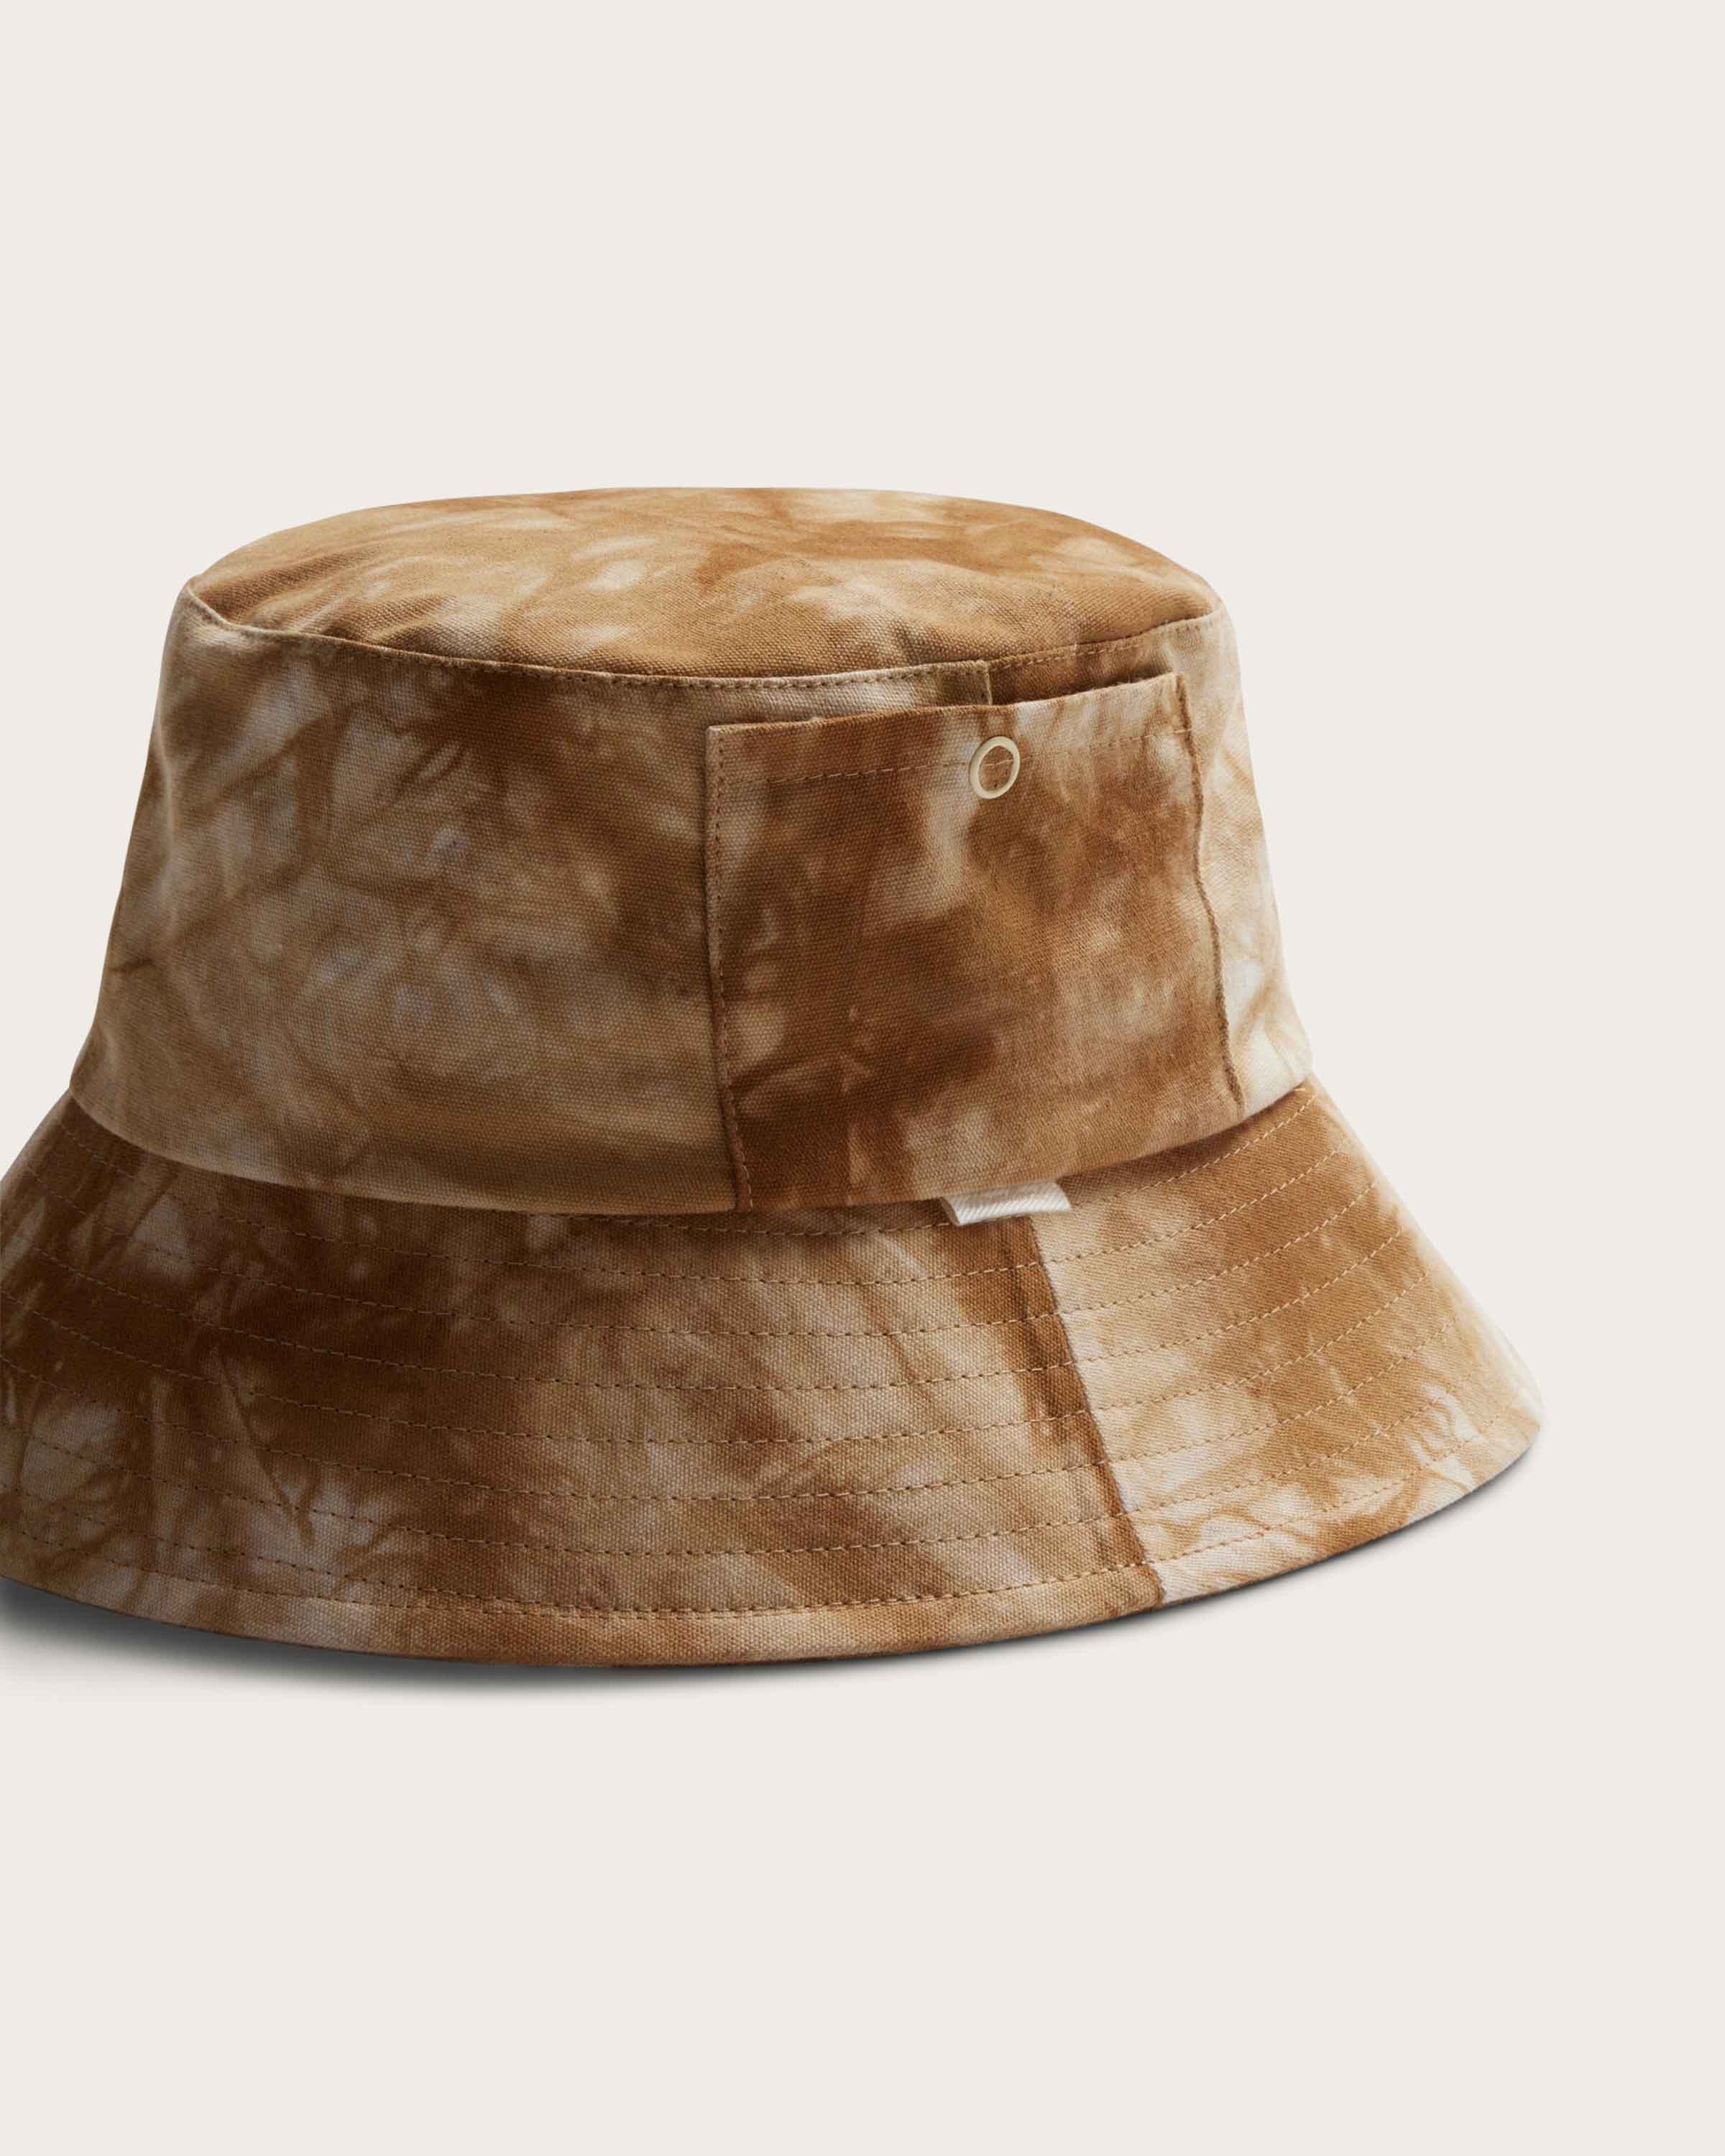 Isle Bucket in Saffron Tie-dye - undefined - Hemlock Hat Co. Buckets